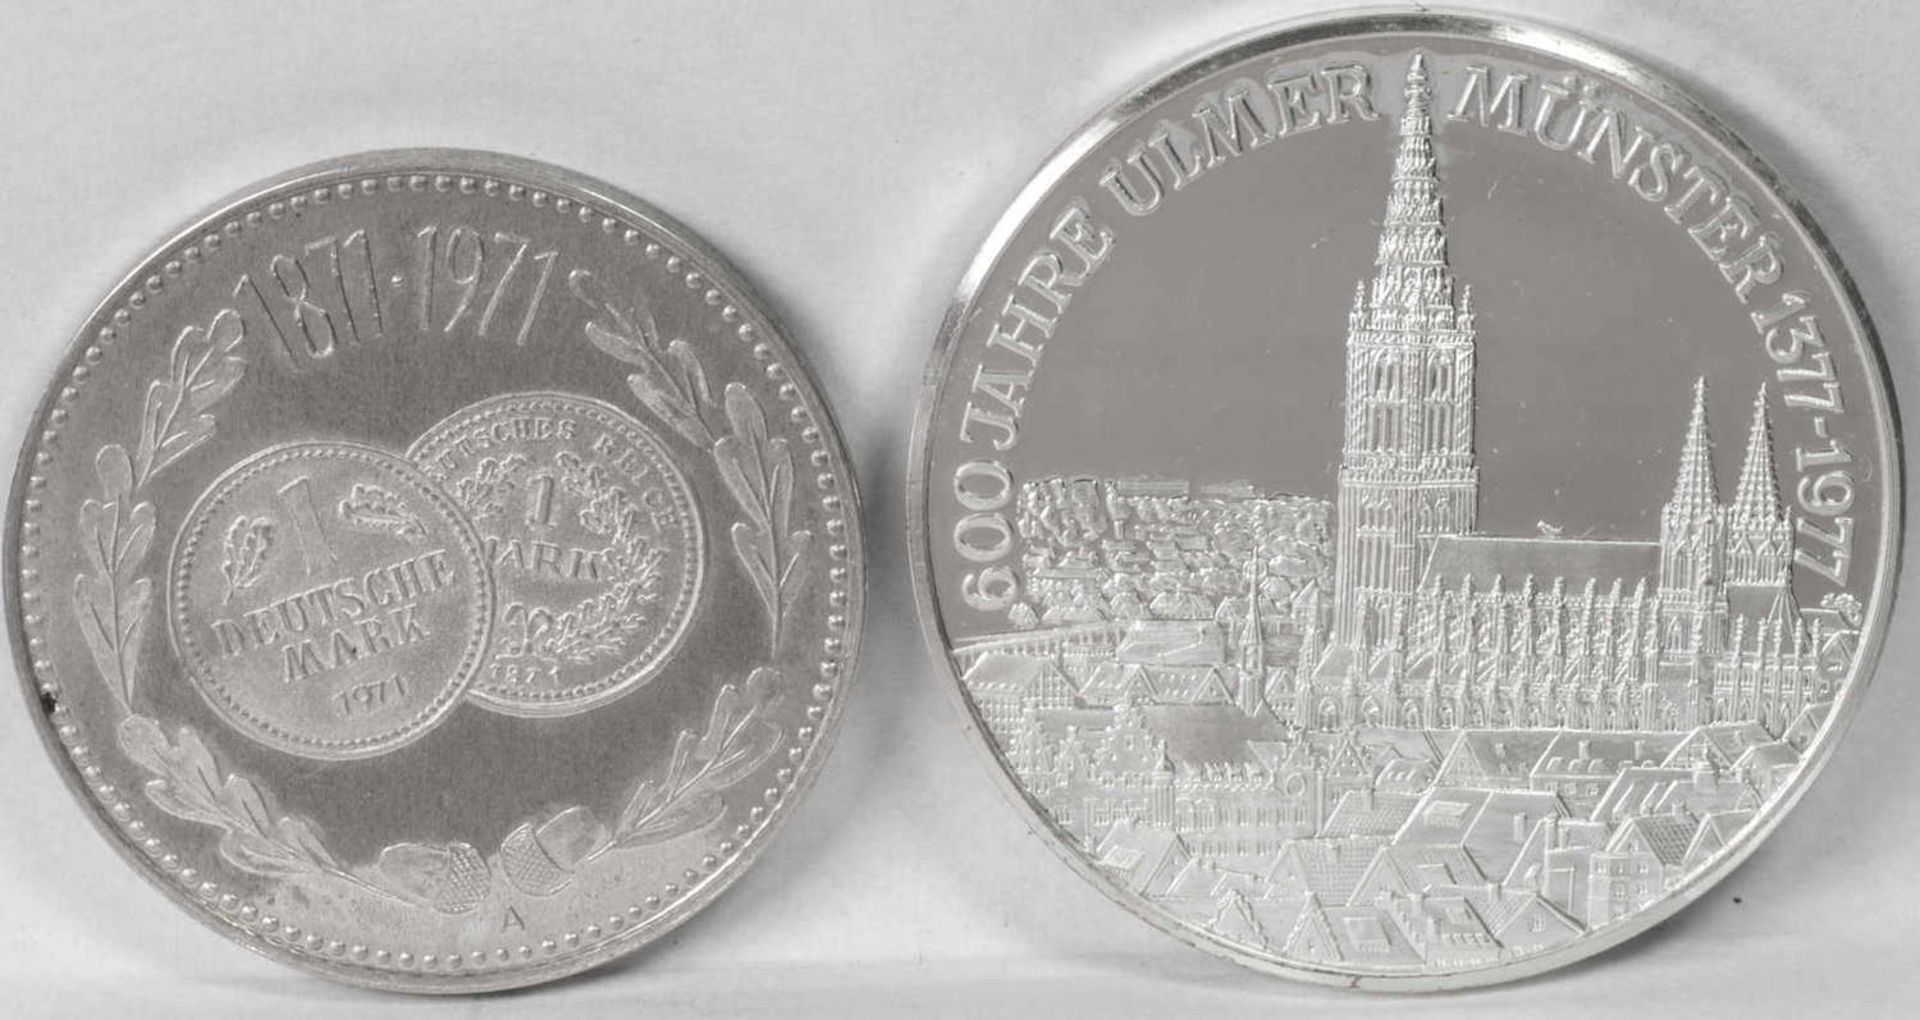 Zwei Silbermedaillen: 1. 600 Jahre Ulmer Münster und 100 Jahre Mark - Währung. Gesamtgewicht: ca. 44